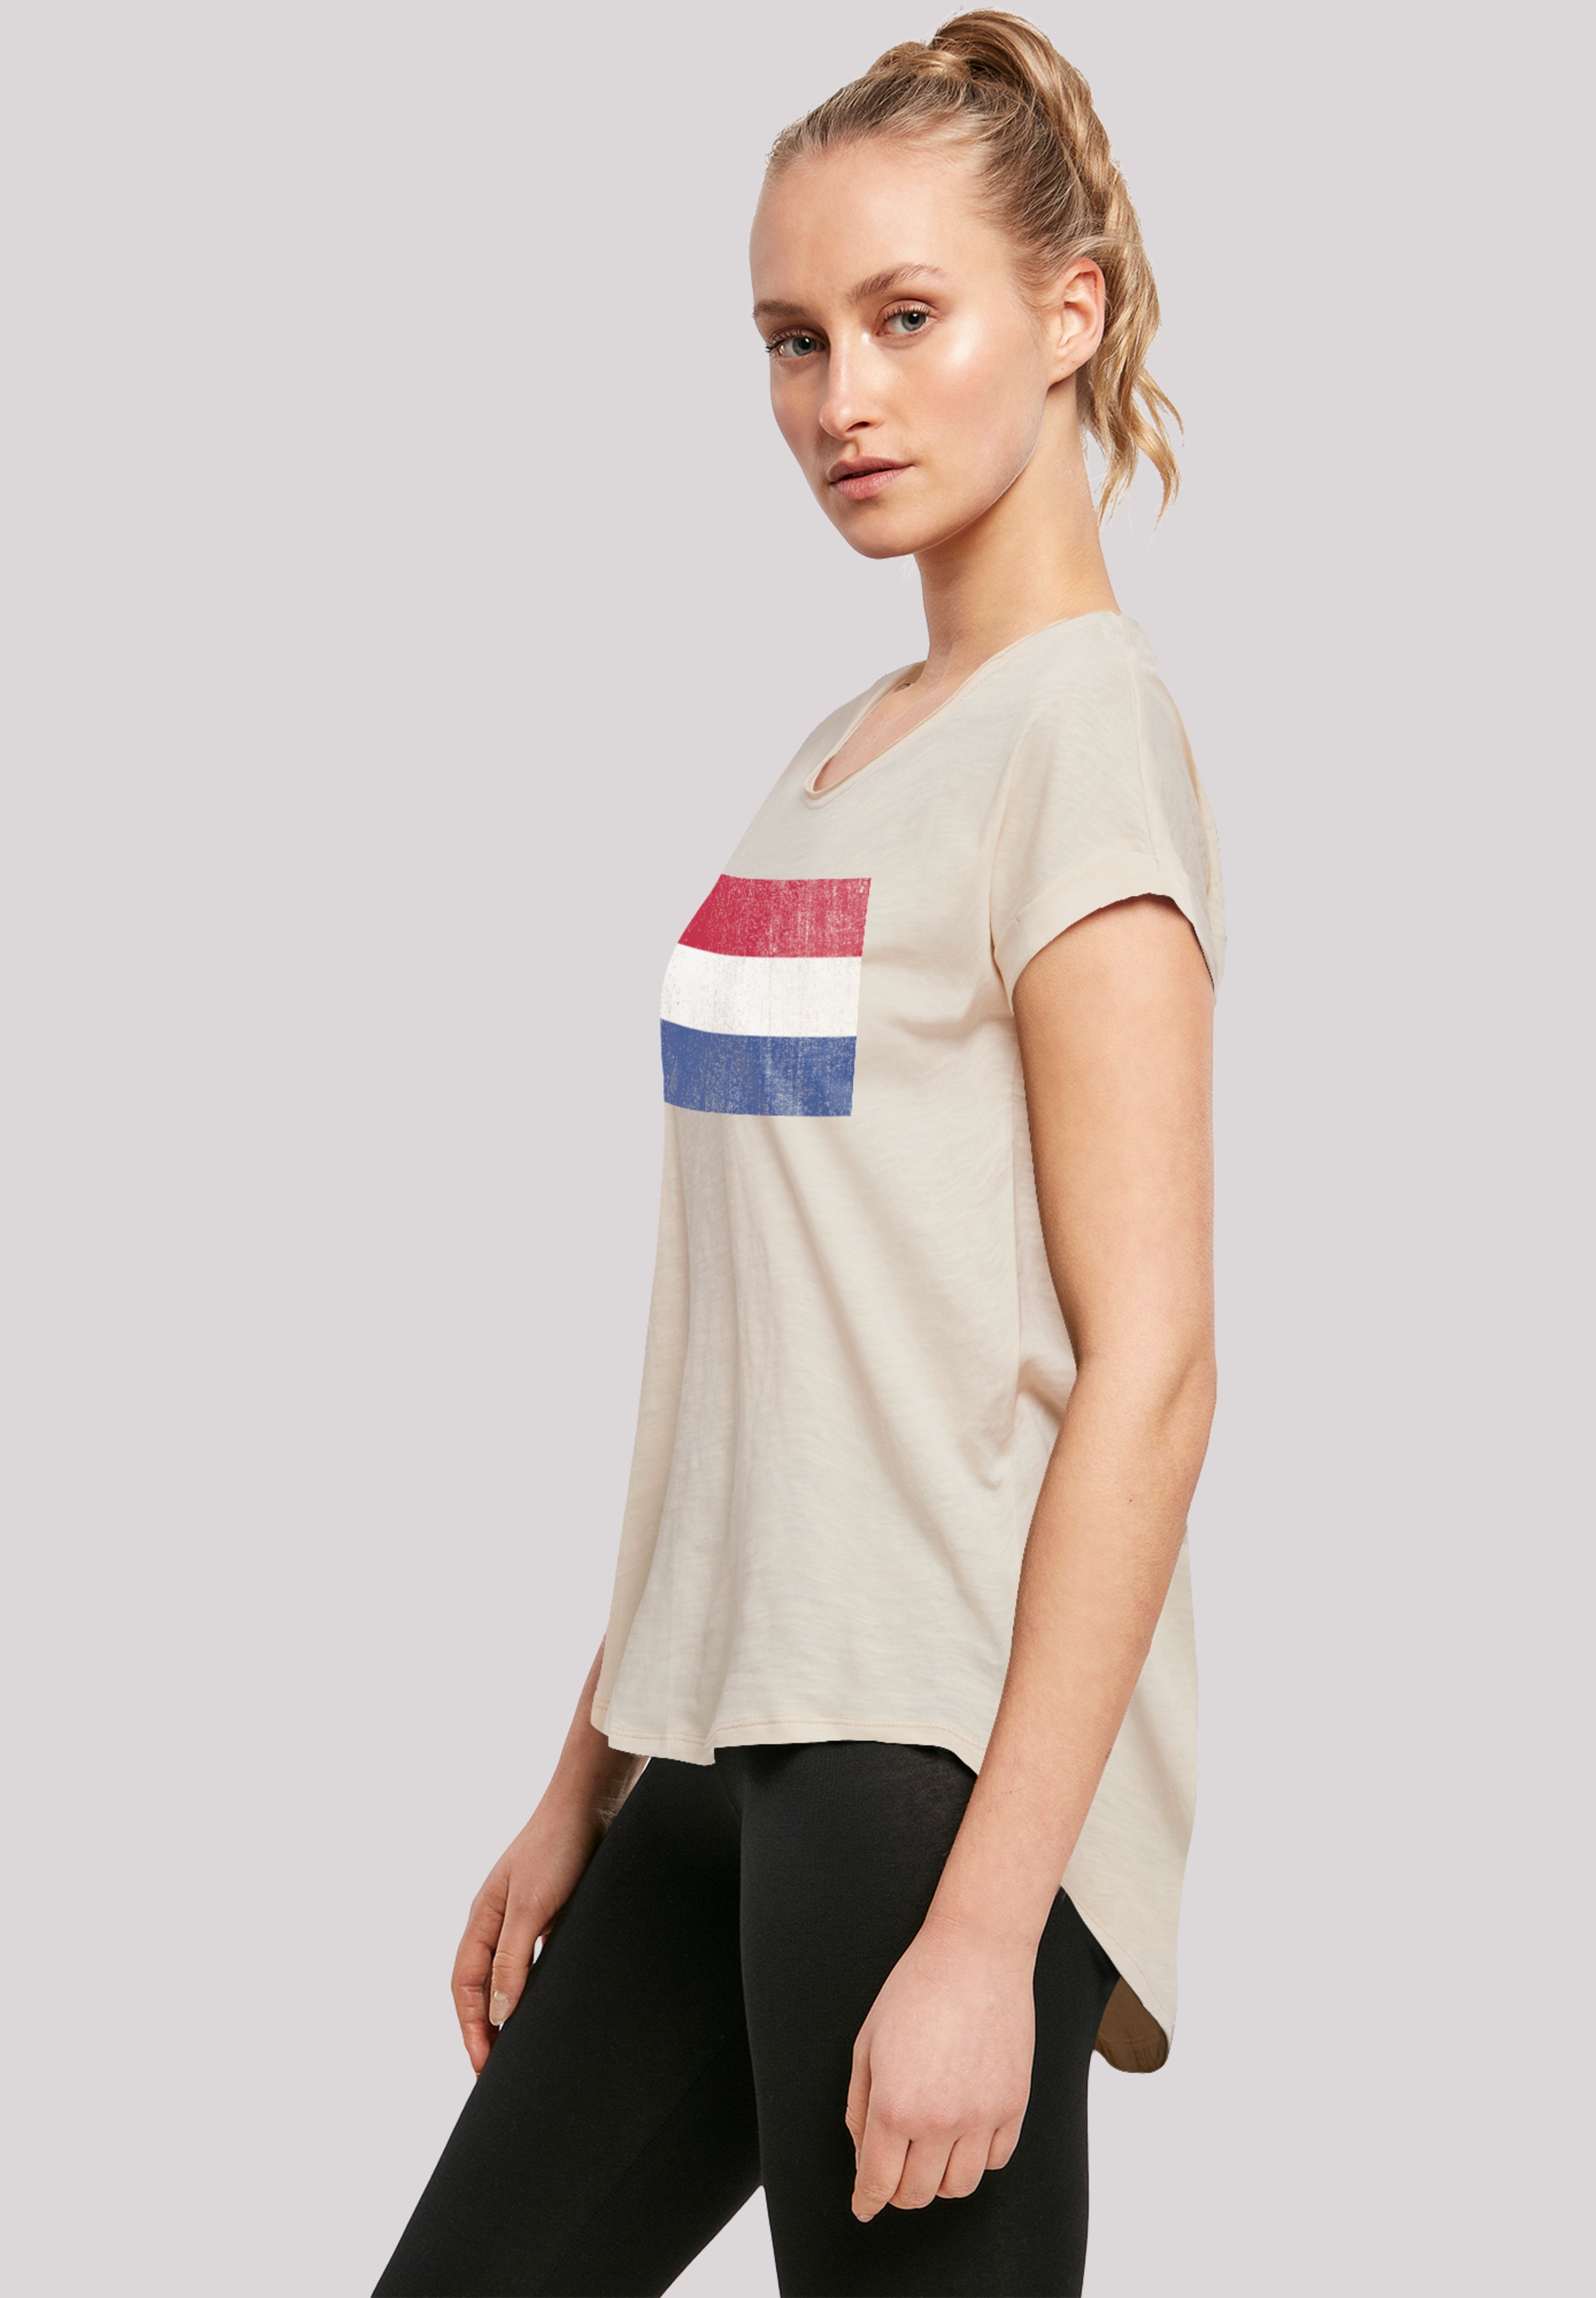 Flagge shoppen »Netherlands Holland distressed«, Print F4NT4STIC NIederlande T-Shirt